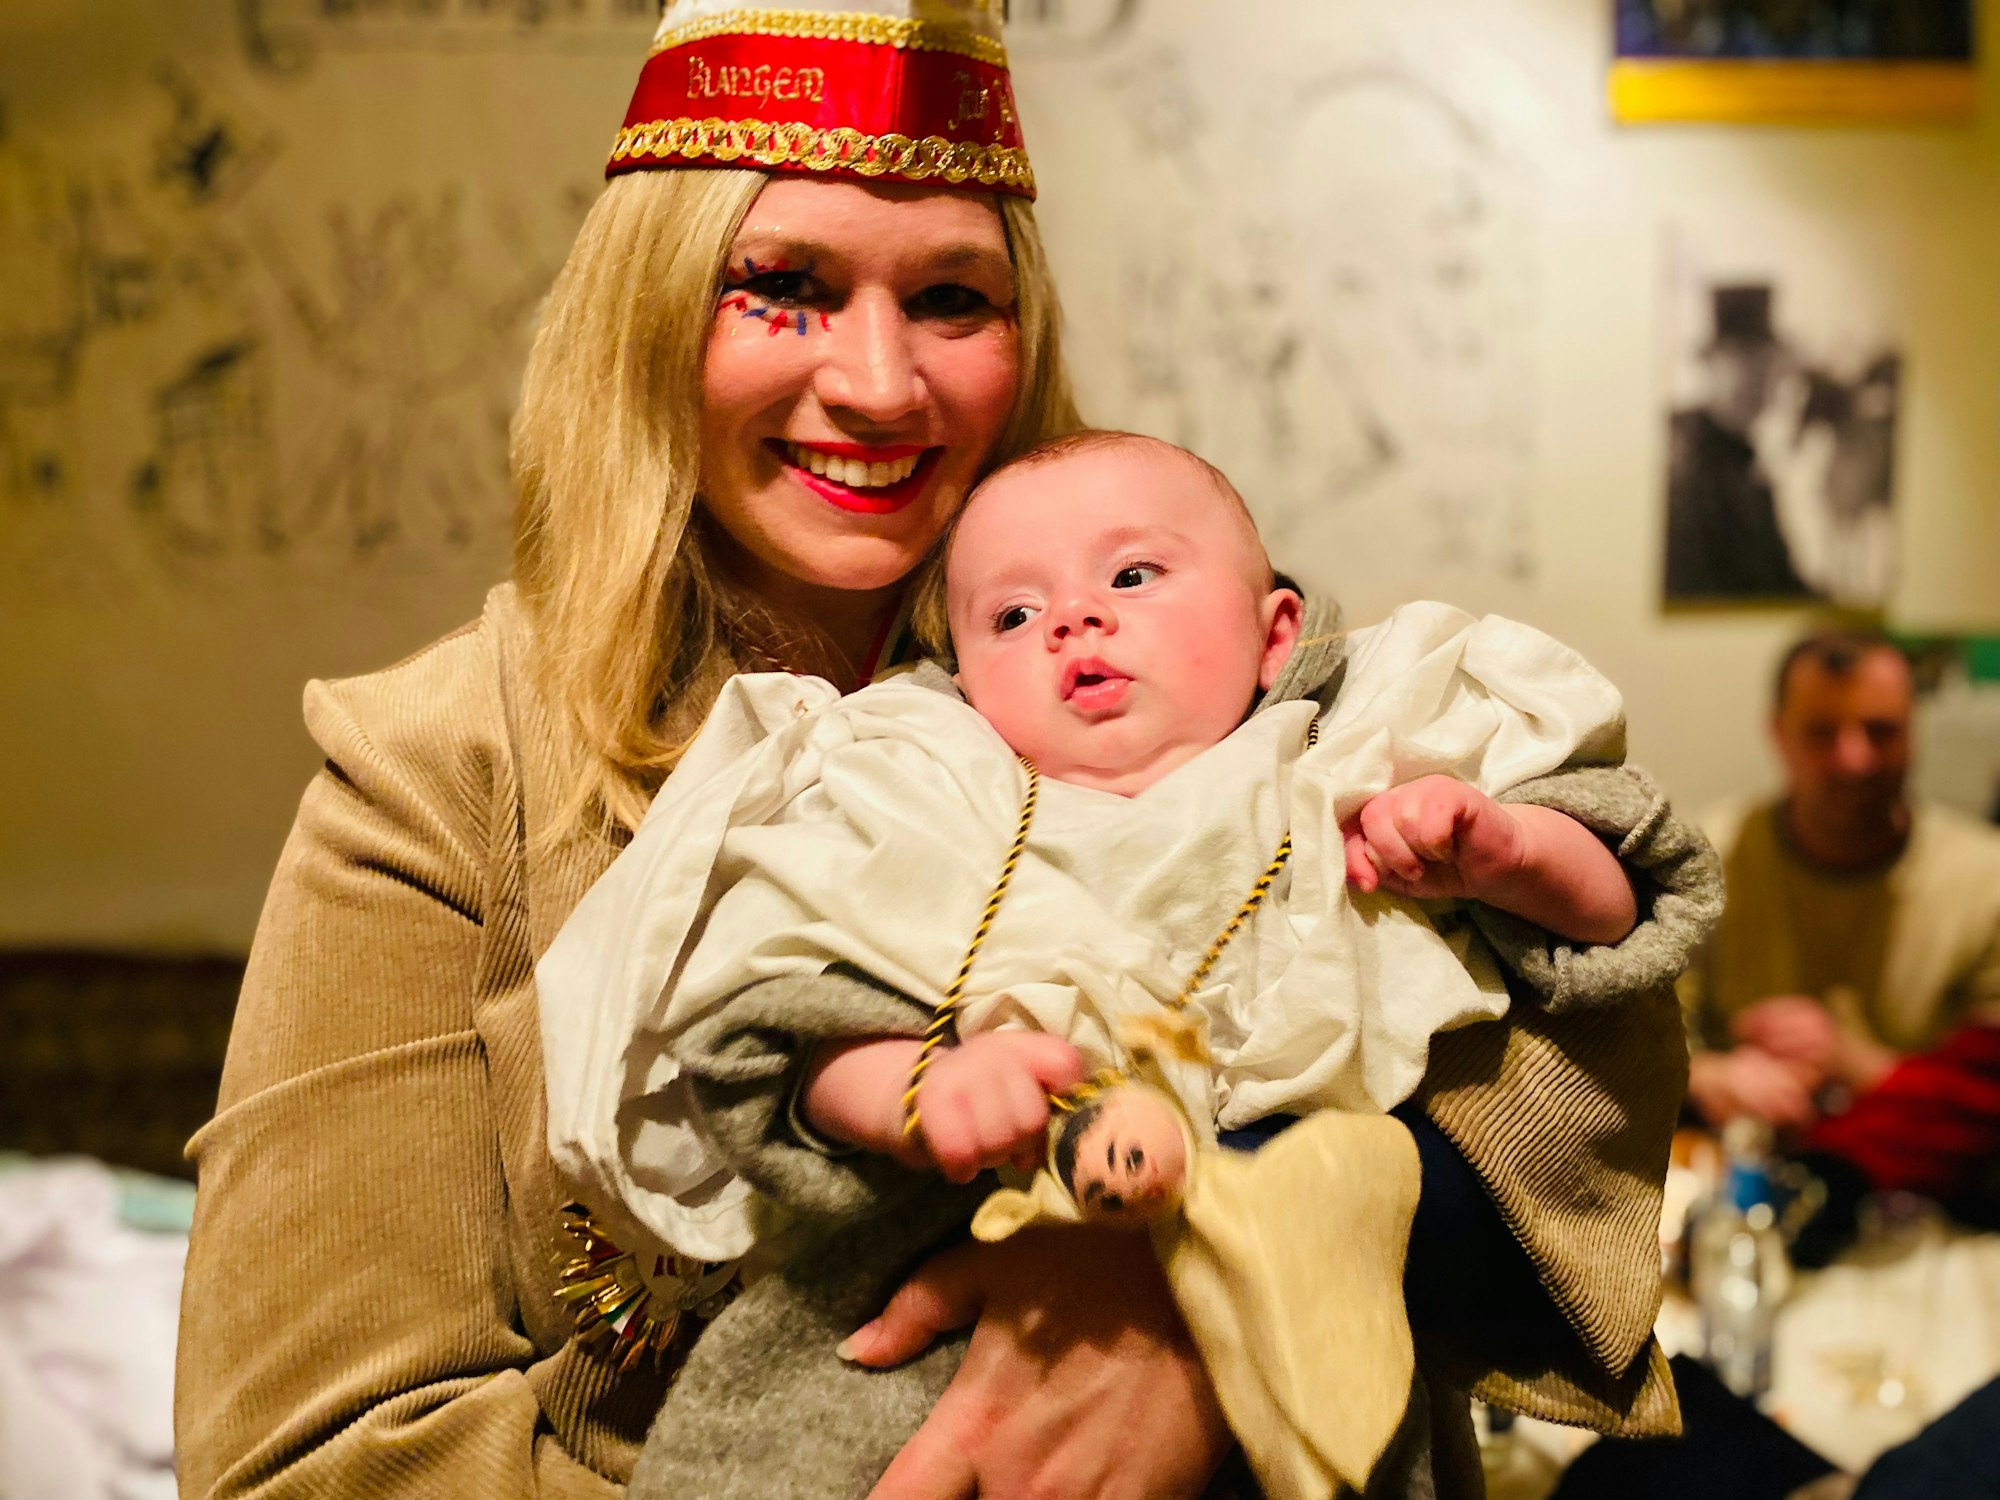 Die Blankenheimer Bürgermeisterin Jennifer Meuren hält ihren kleinen Sohn Levi auf dem Arm. Sie trägt eine Narrenkappe, der Junge ein kleines Geisterkostüm.